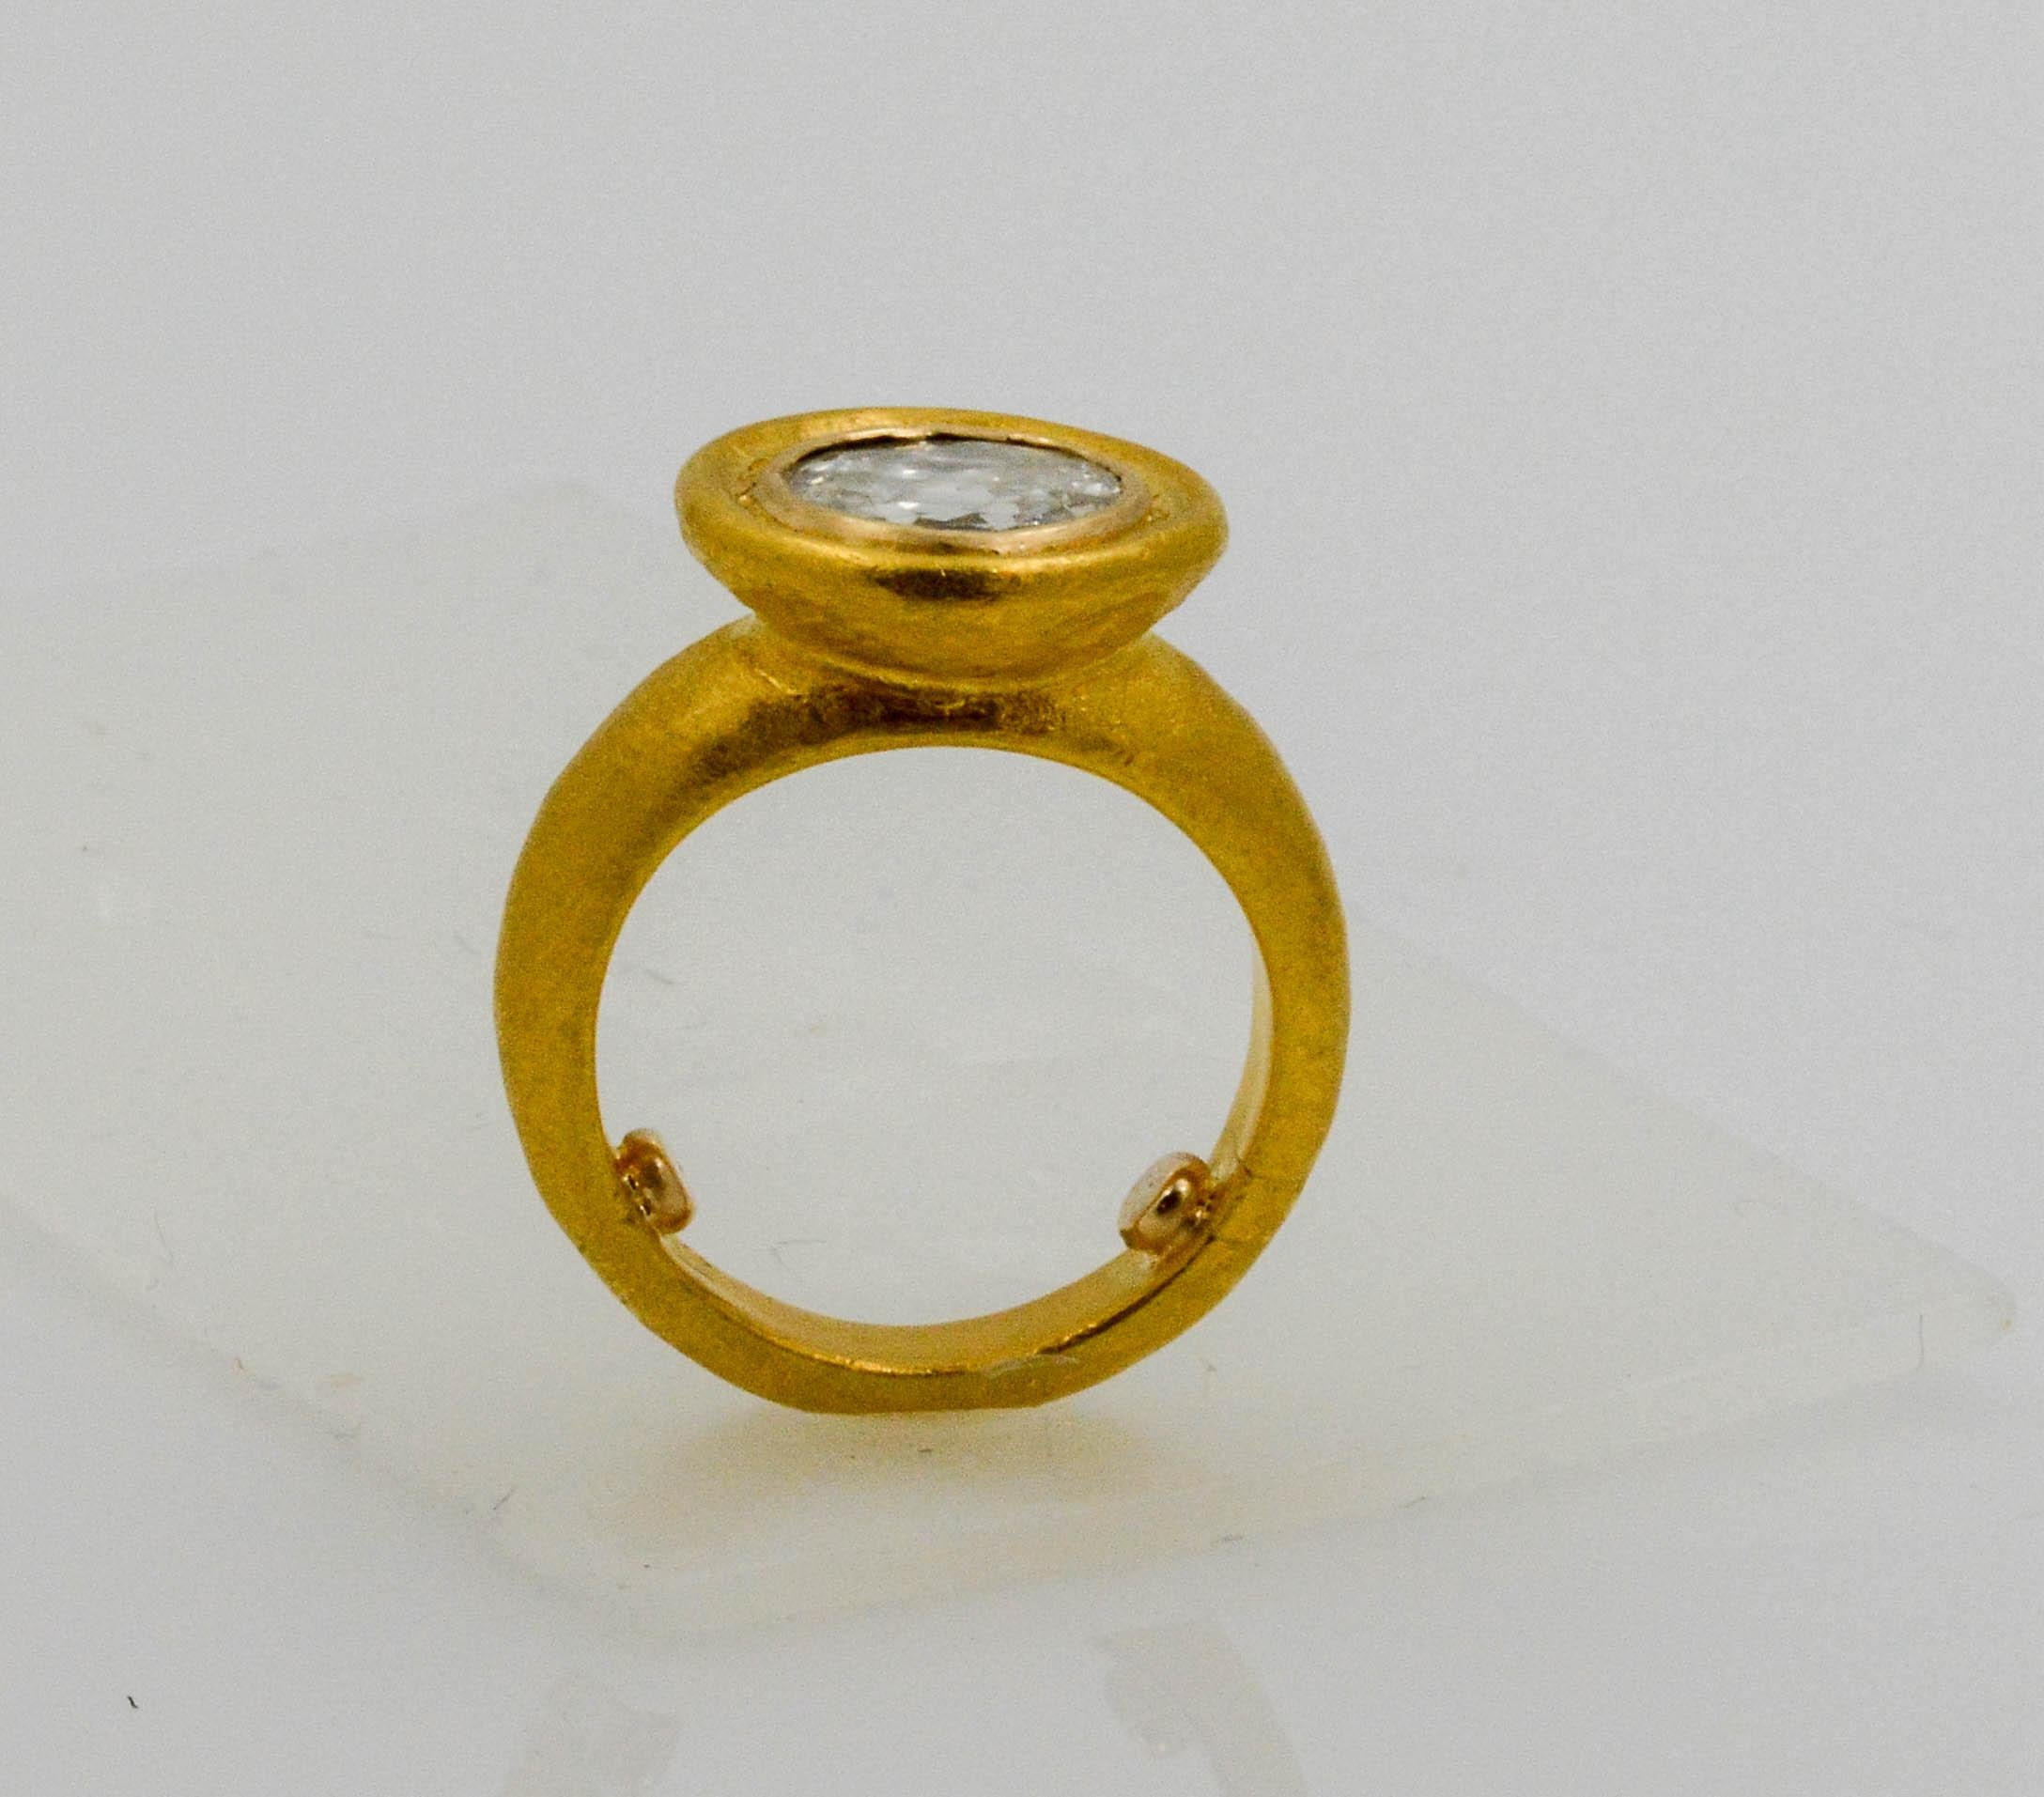 24 karat gold engagement ring